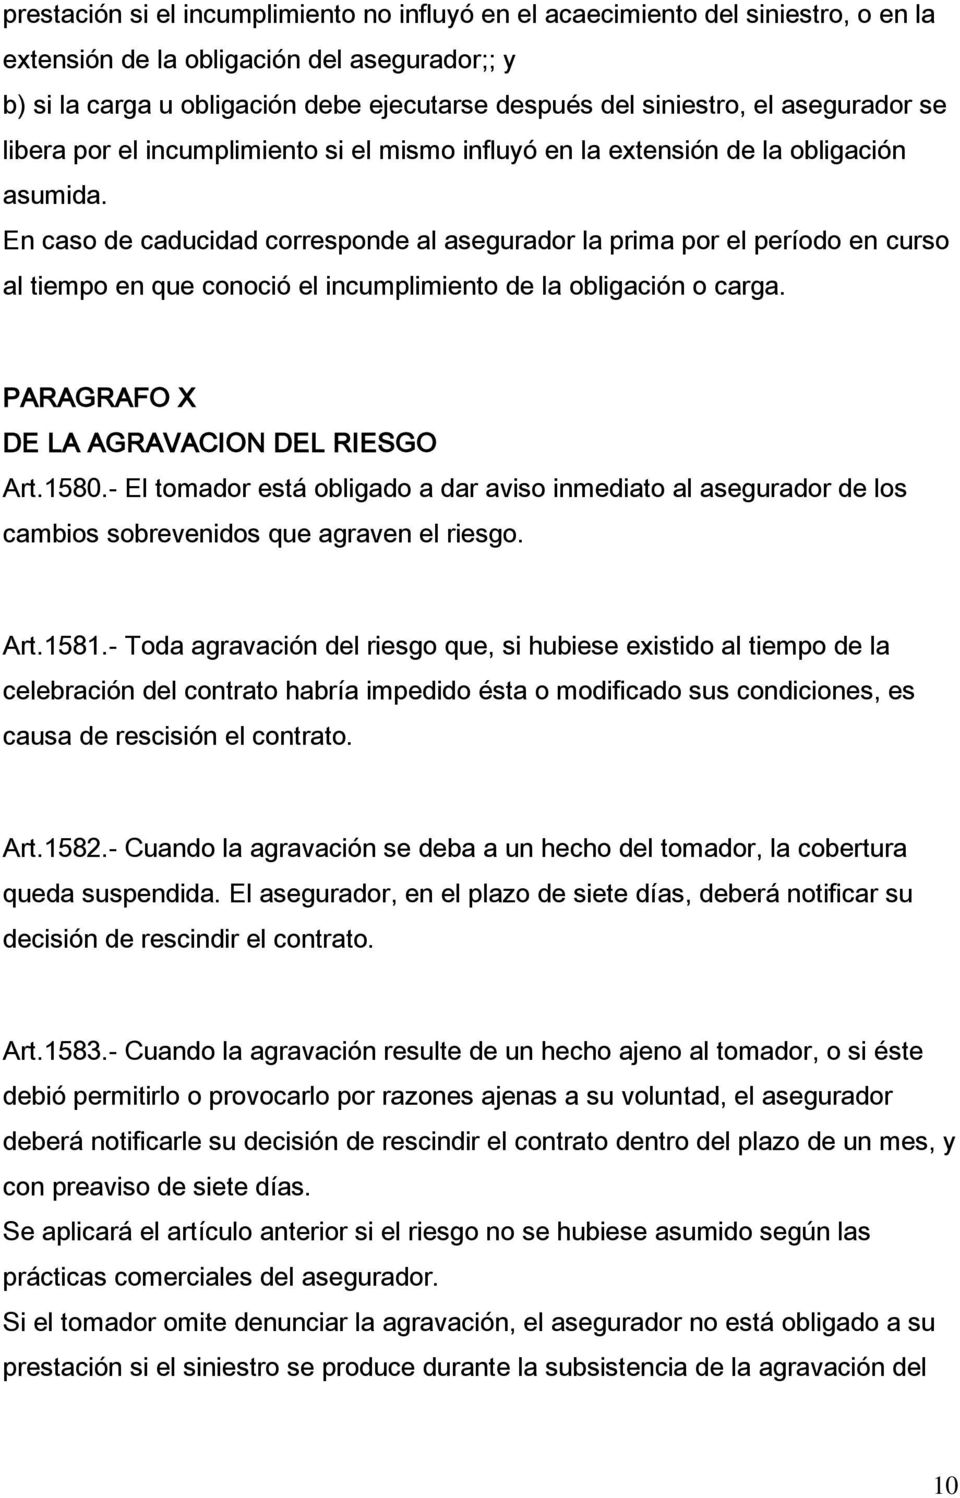 En caso de caducidad corresponde al asegurador la prima por el período en curso al tiempo en que conoció el incumplimiento de la obligación o carga. PARAGRAFO X DE LA AGRAVACION DEL RIESGO Art.1580.